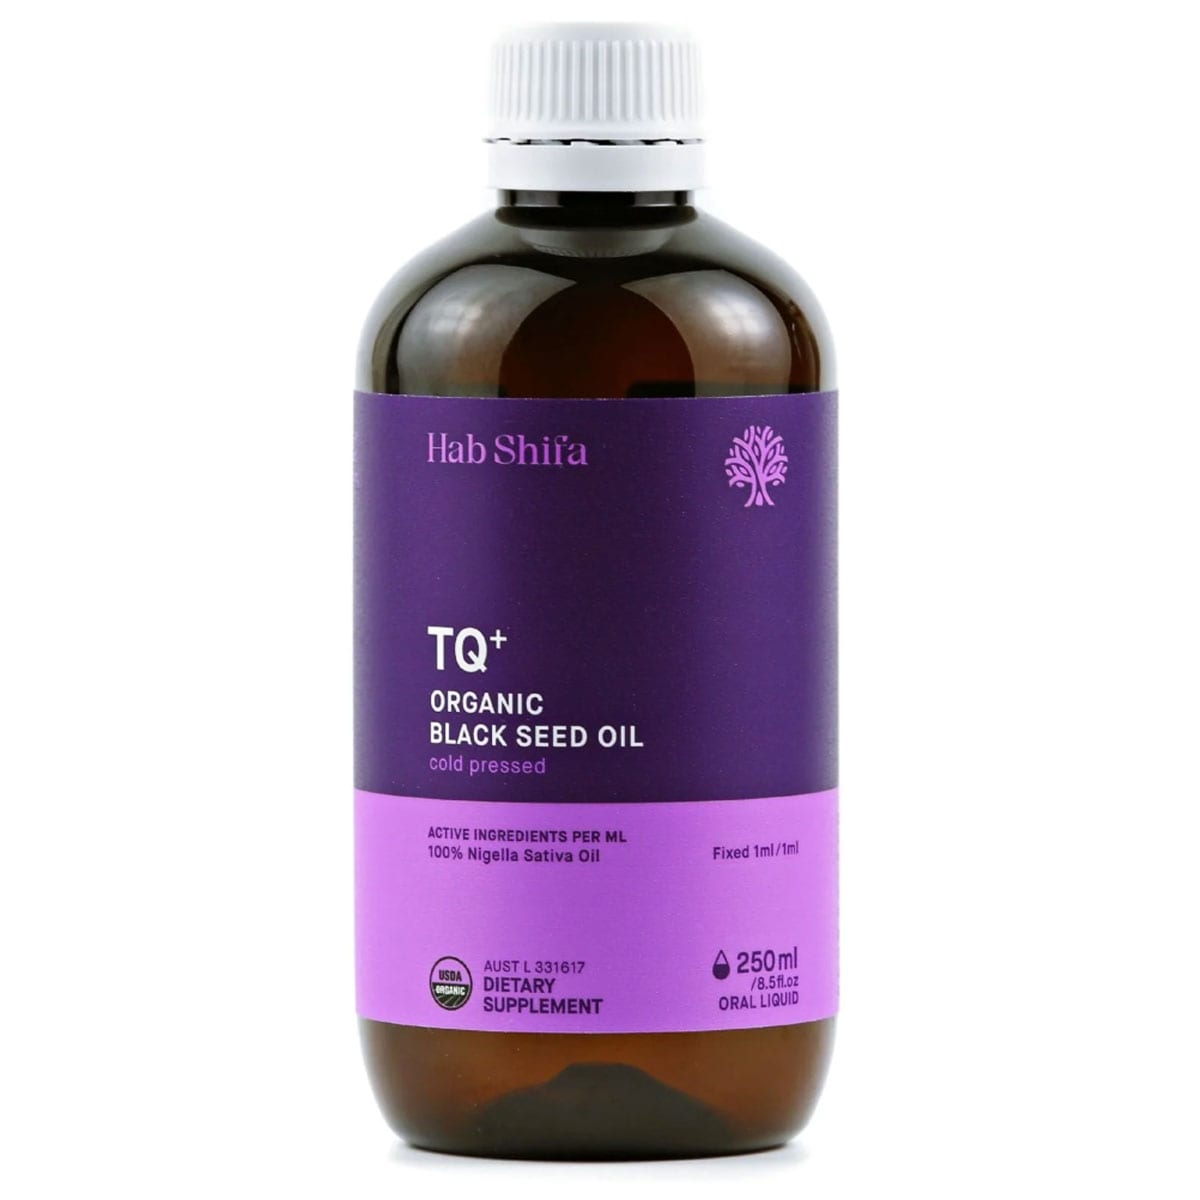 Hab Shifa TQ+ Organic Black Seed Oil 250ml Australia